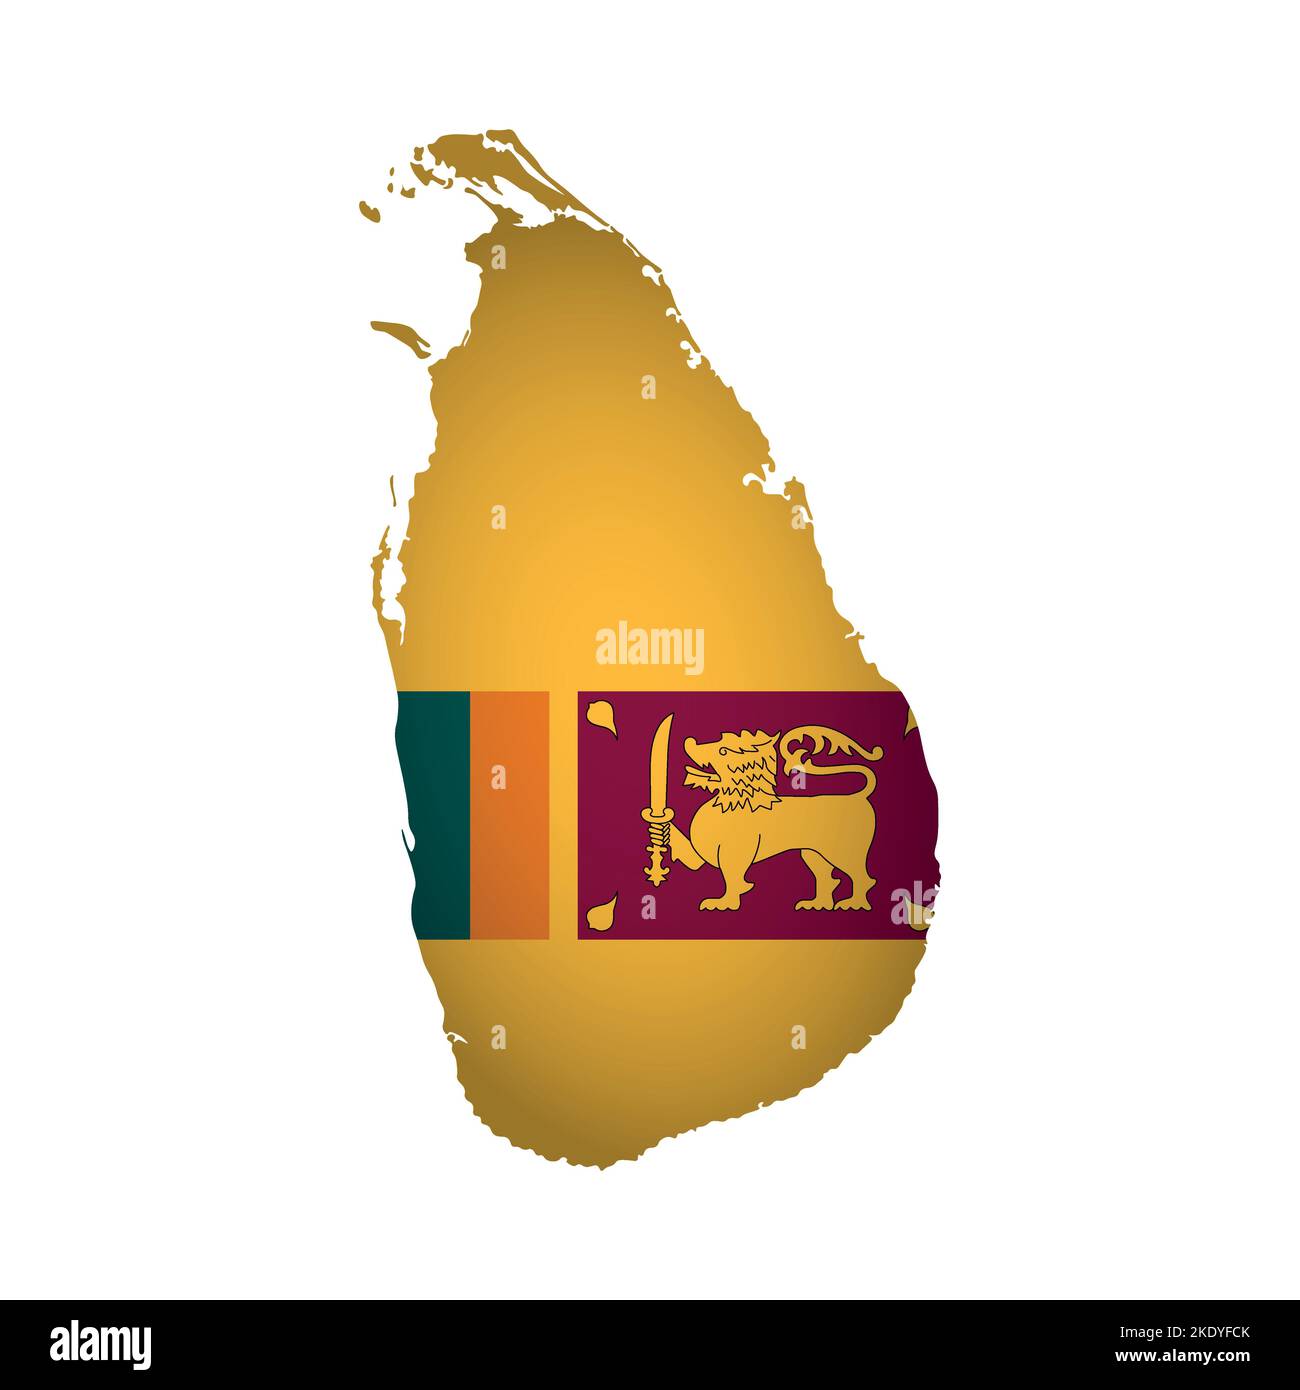 Illustration vectorielle isolée. Inscription officielle sur la carte du Sri Lanka. Drapeau national avec lion d'or sur fond coloré. Conception créative polygonale Illustration de Vecteur